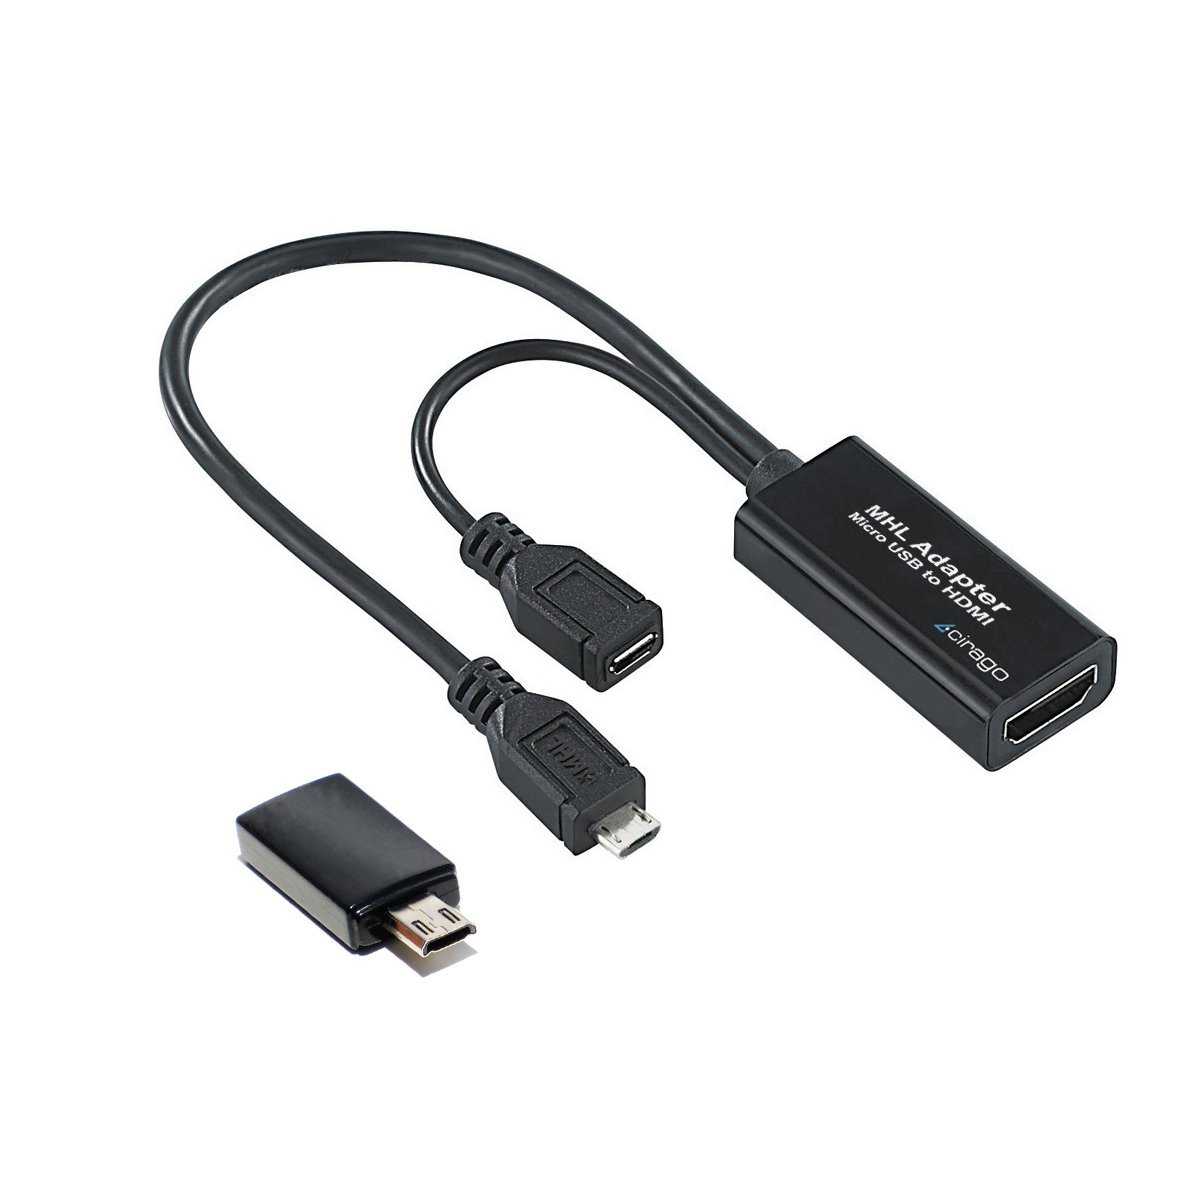 Переходник для подключения телефона. Кабель USB-HDMI (подключить смартфон к телевизору). Блютуз адаптер для телевизора самсунг. Переходник с юсб на HDMI для телевизора. HDMI вай фай переходник.